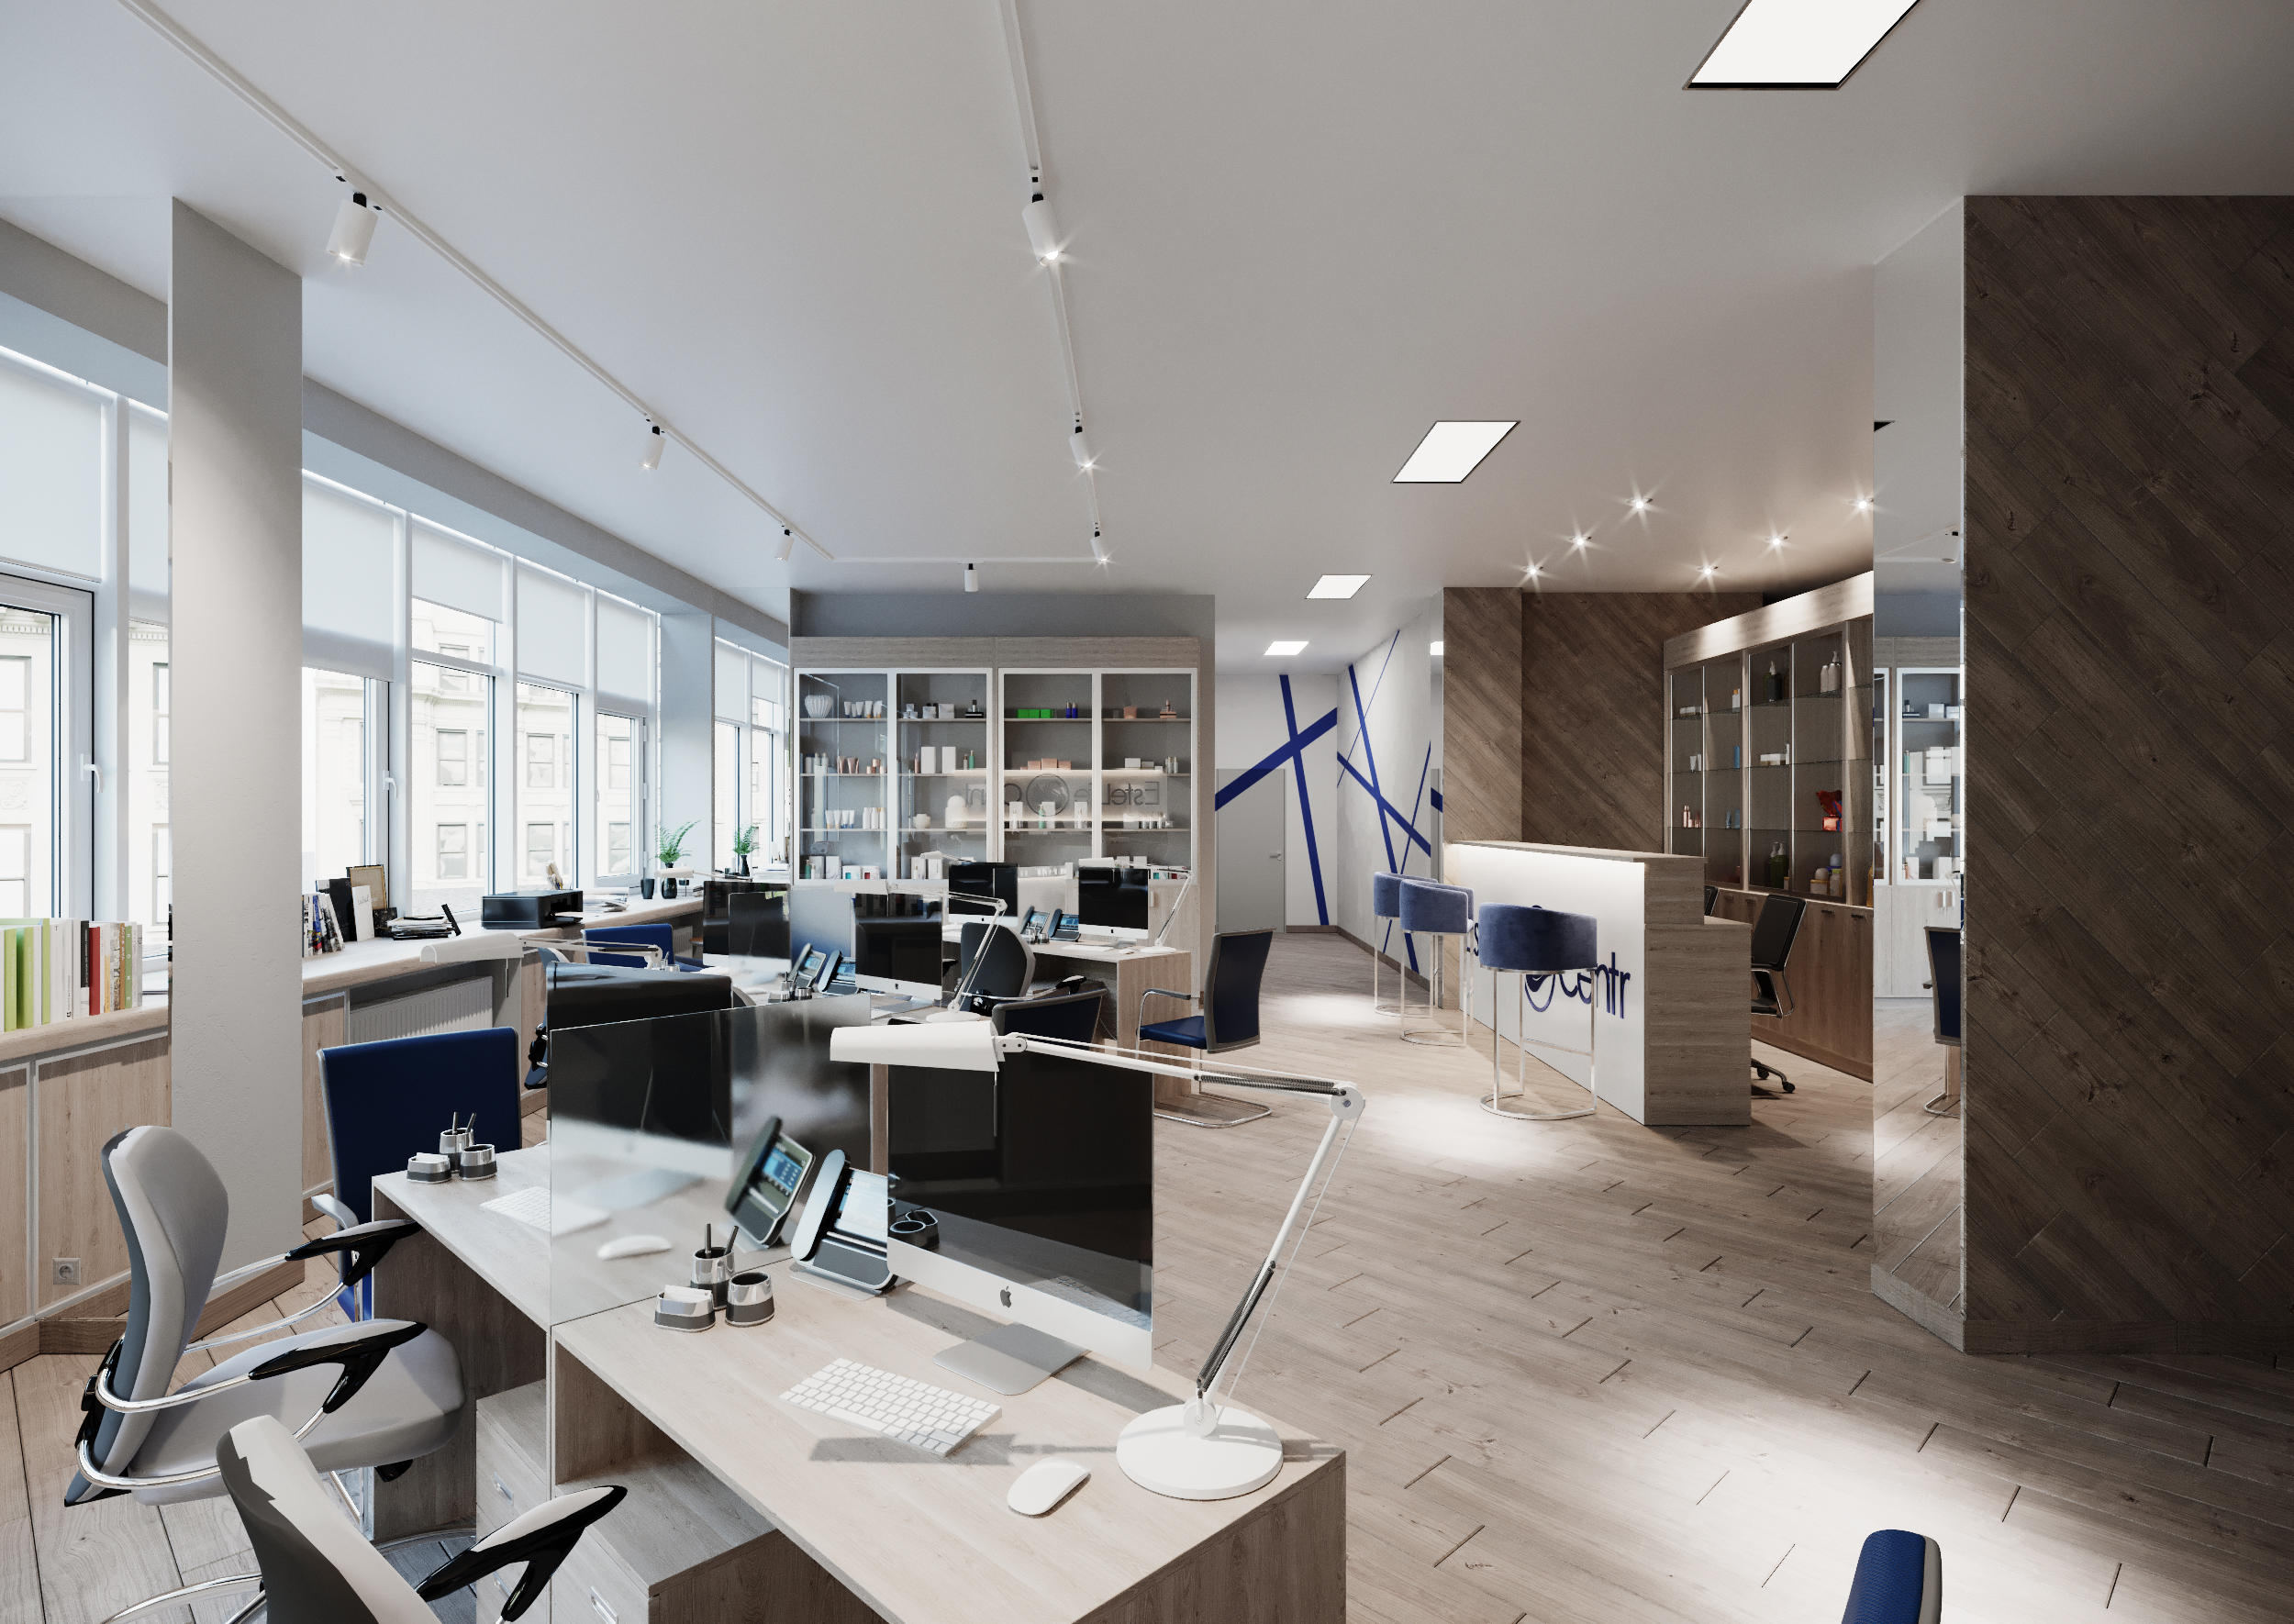 Archvis 3D moderno do escritório em 3d max corona render imagem